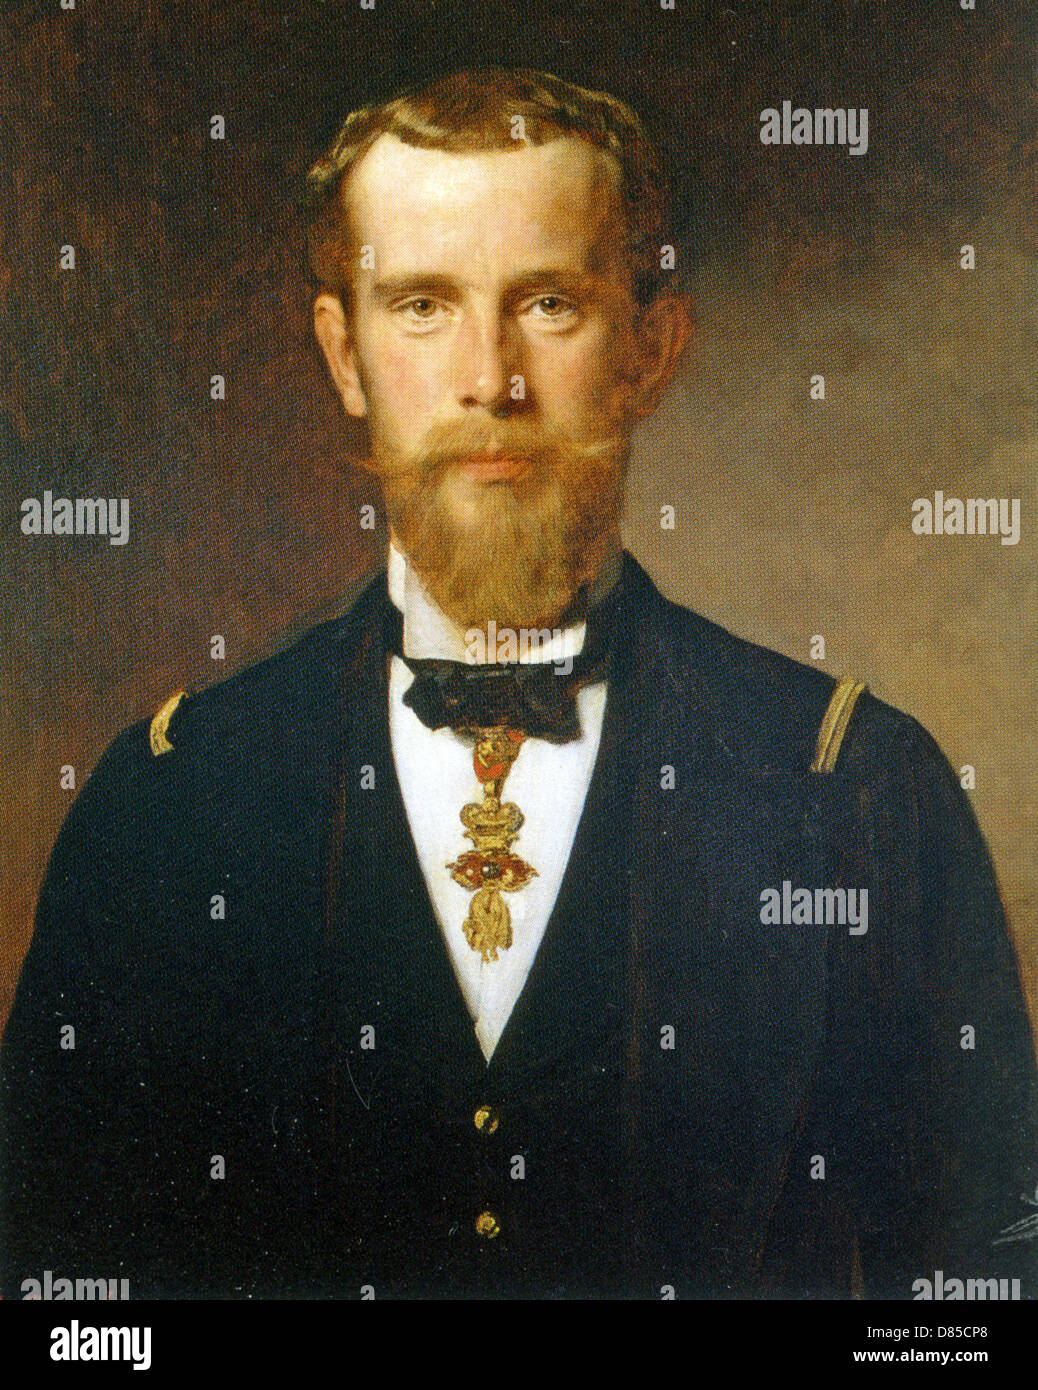 RUDOLF, Kronprinz von Österreich (1858-1889) von Heinrich von Angeli gemalt im Jahr 1885. Rudolf beging Selbstmord. Stockfoto